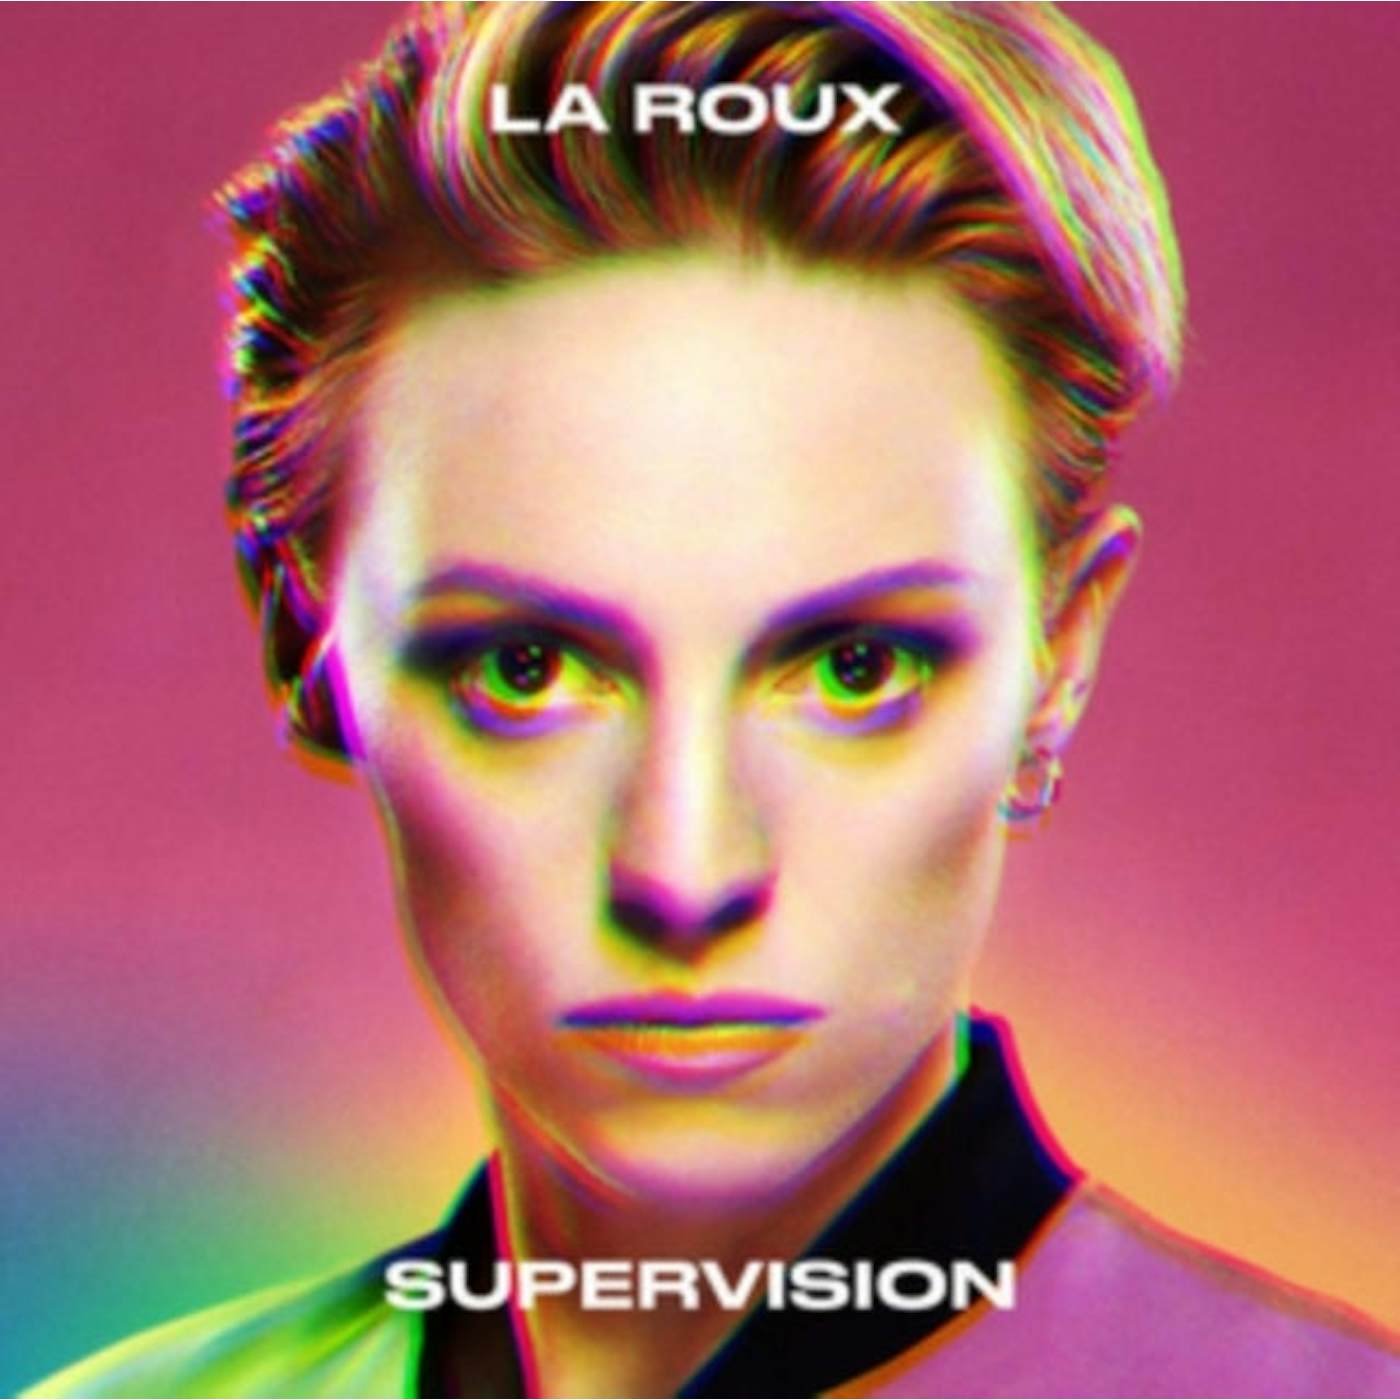 La Roux LP Vinyl Record - Supervision